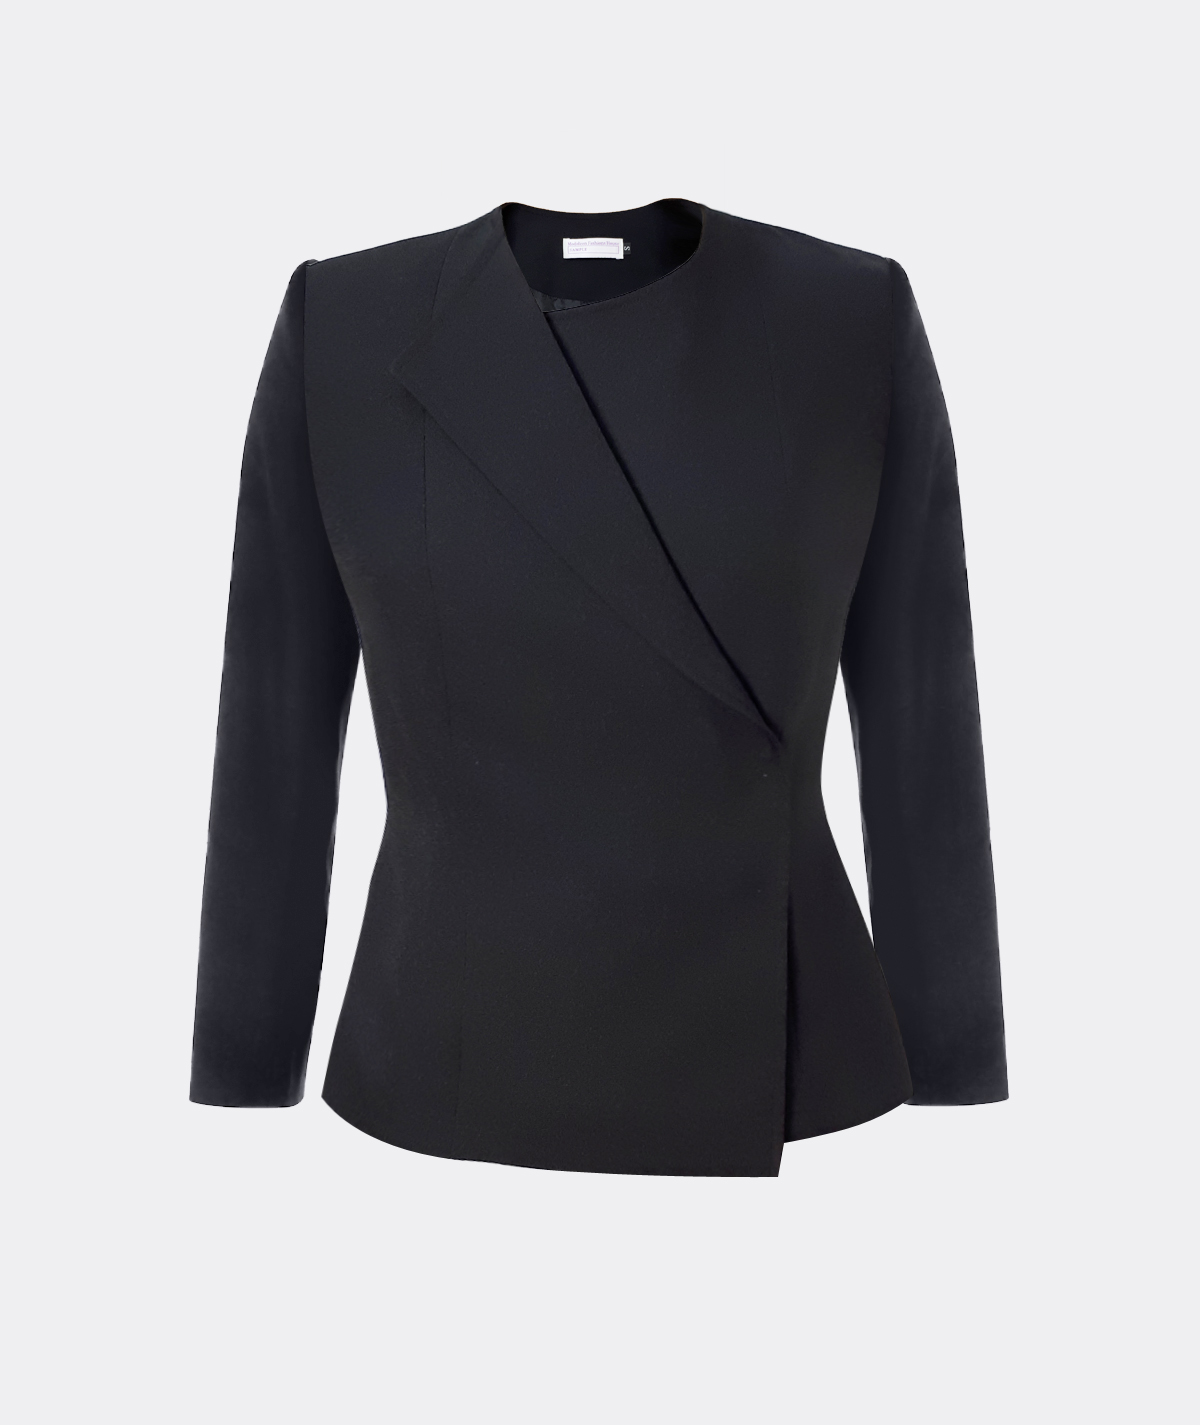 bank-uniform-female-jacket-stylish-uniform-fashionable-front-desk-jacket-singapore-jacket-tailor-bespoke-femalewear-corporatewear-ladies